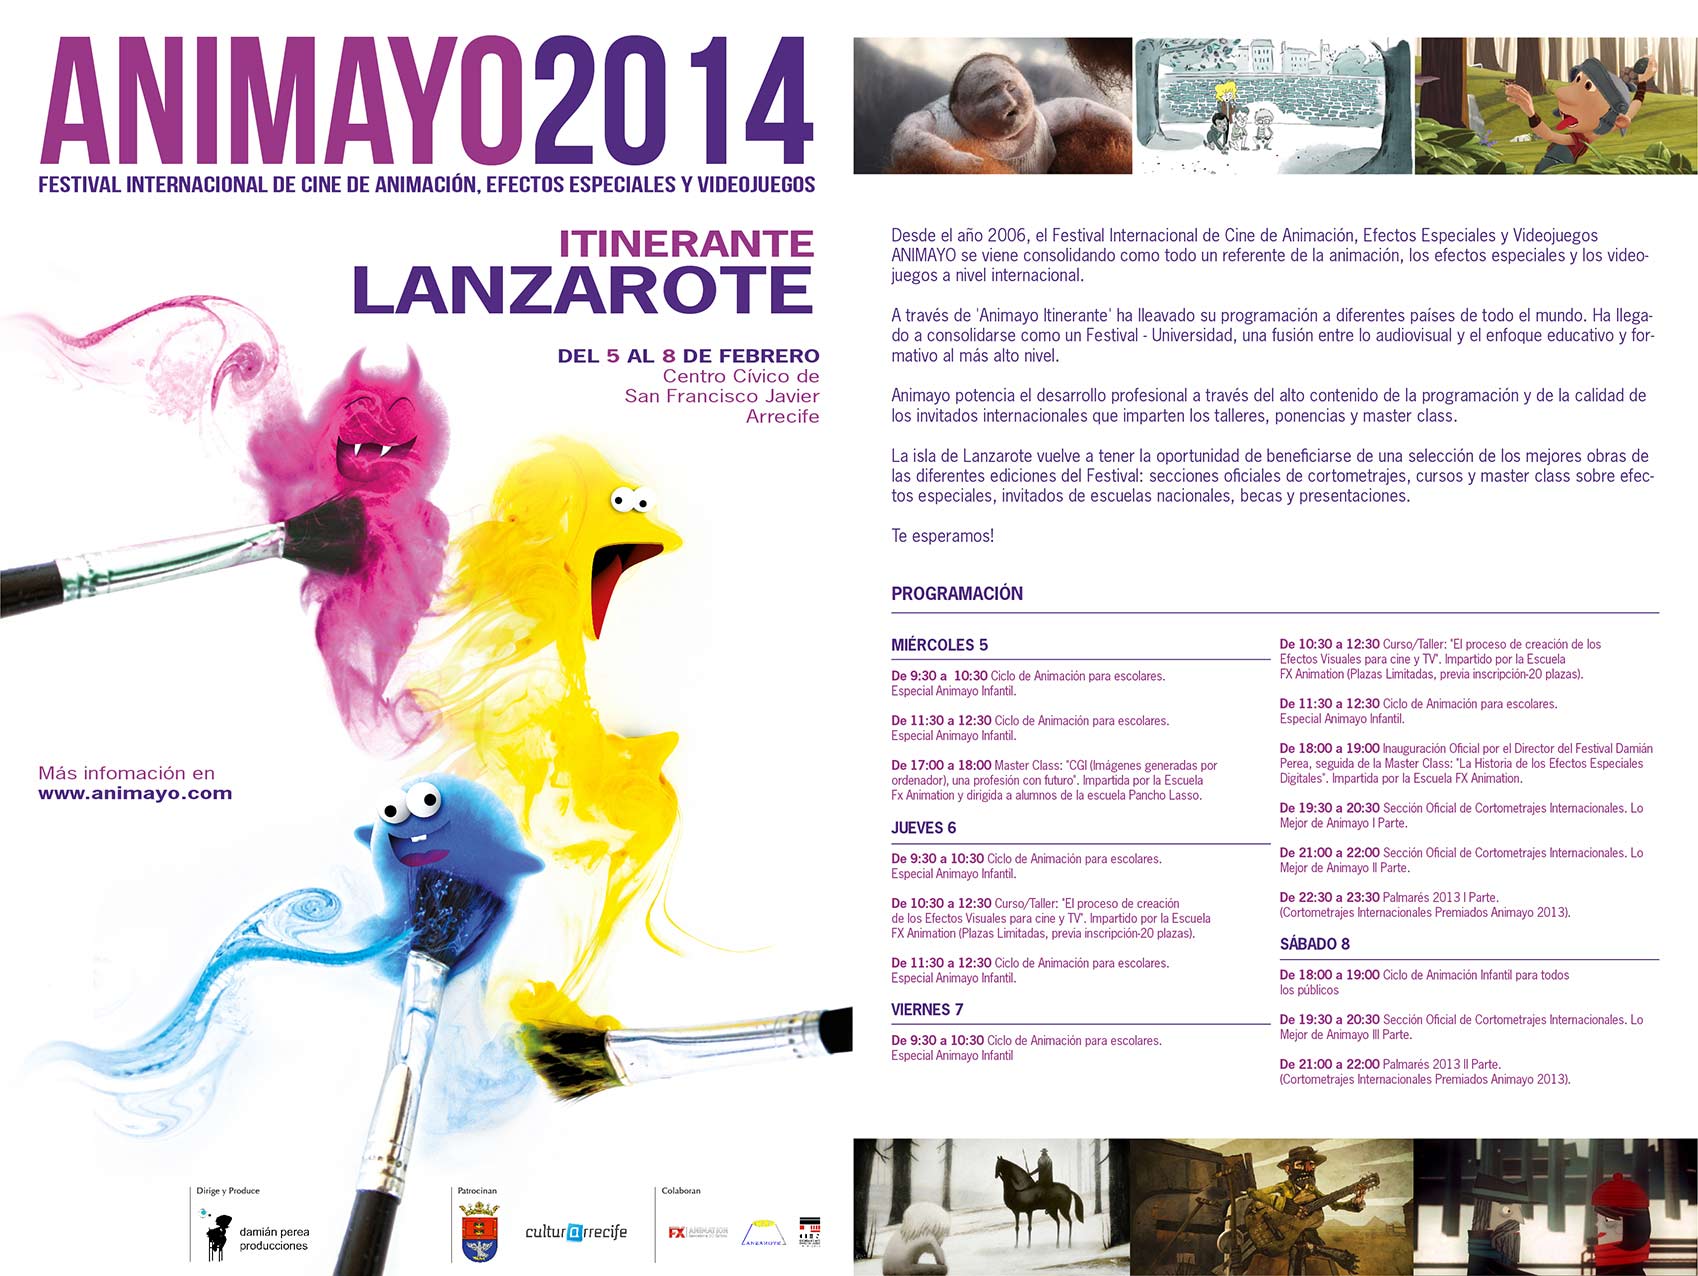 Festival Internacional de Cine de Animación Animayo 2014